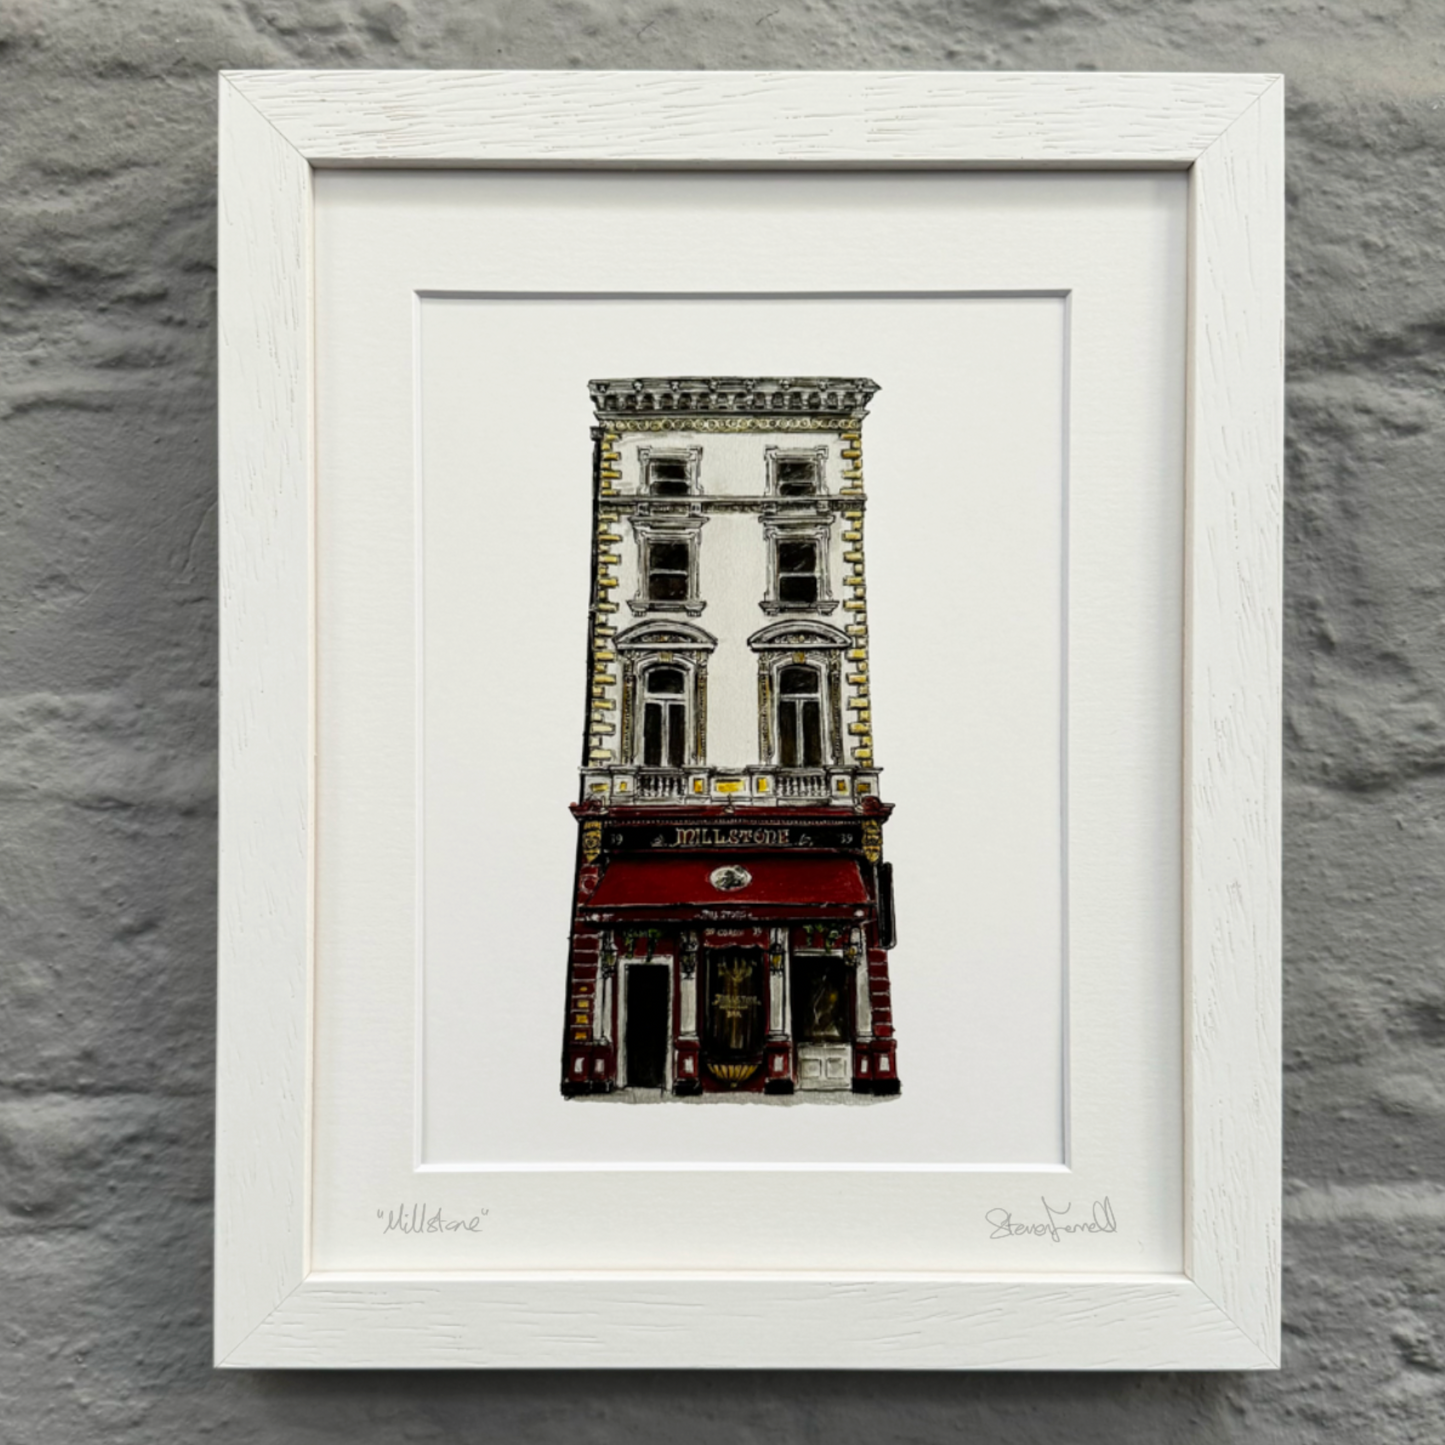 Millstone-fine-framed-Dublin-pub-Steven-Mannion-Farrell